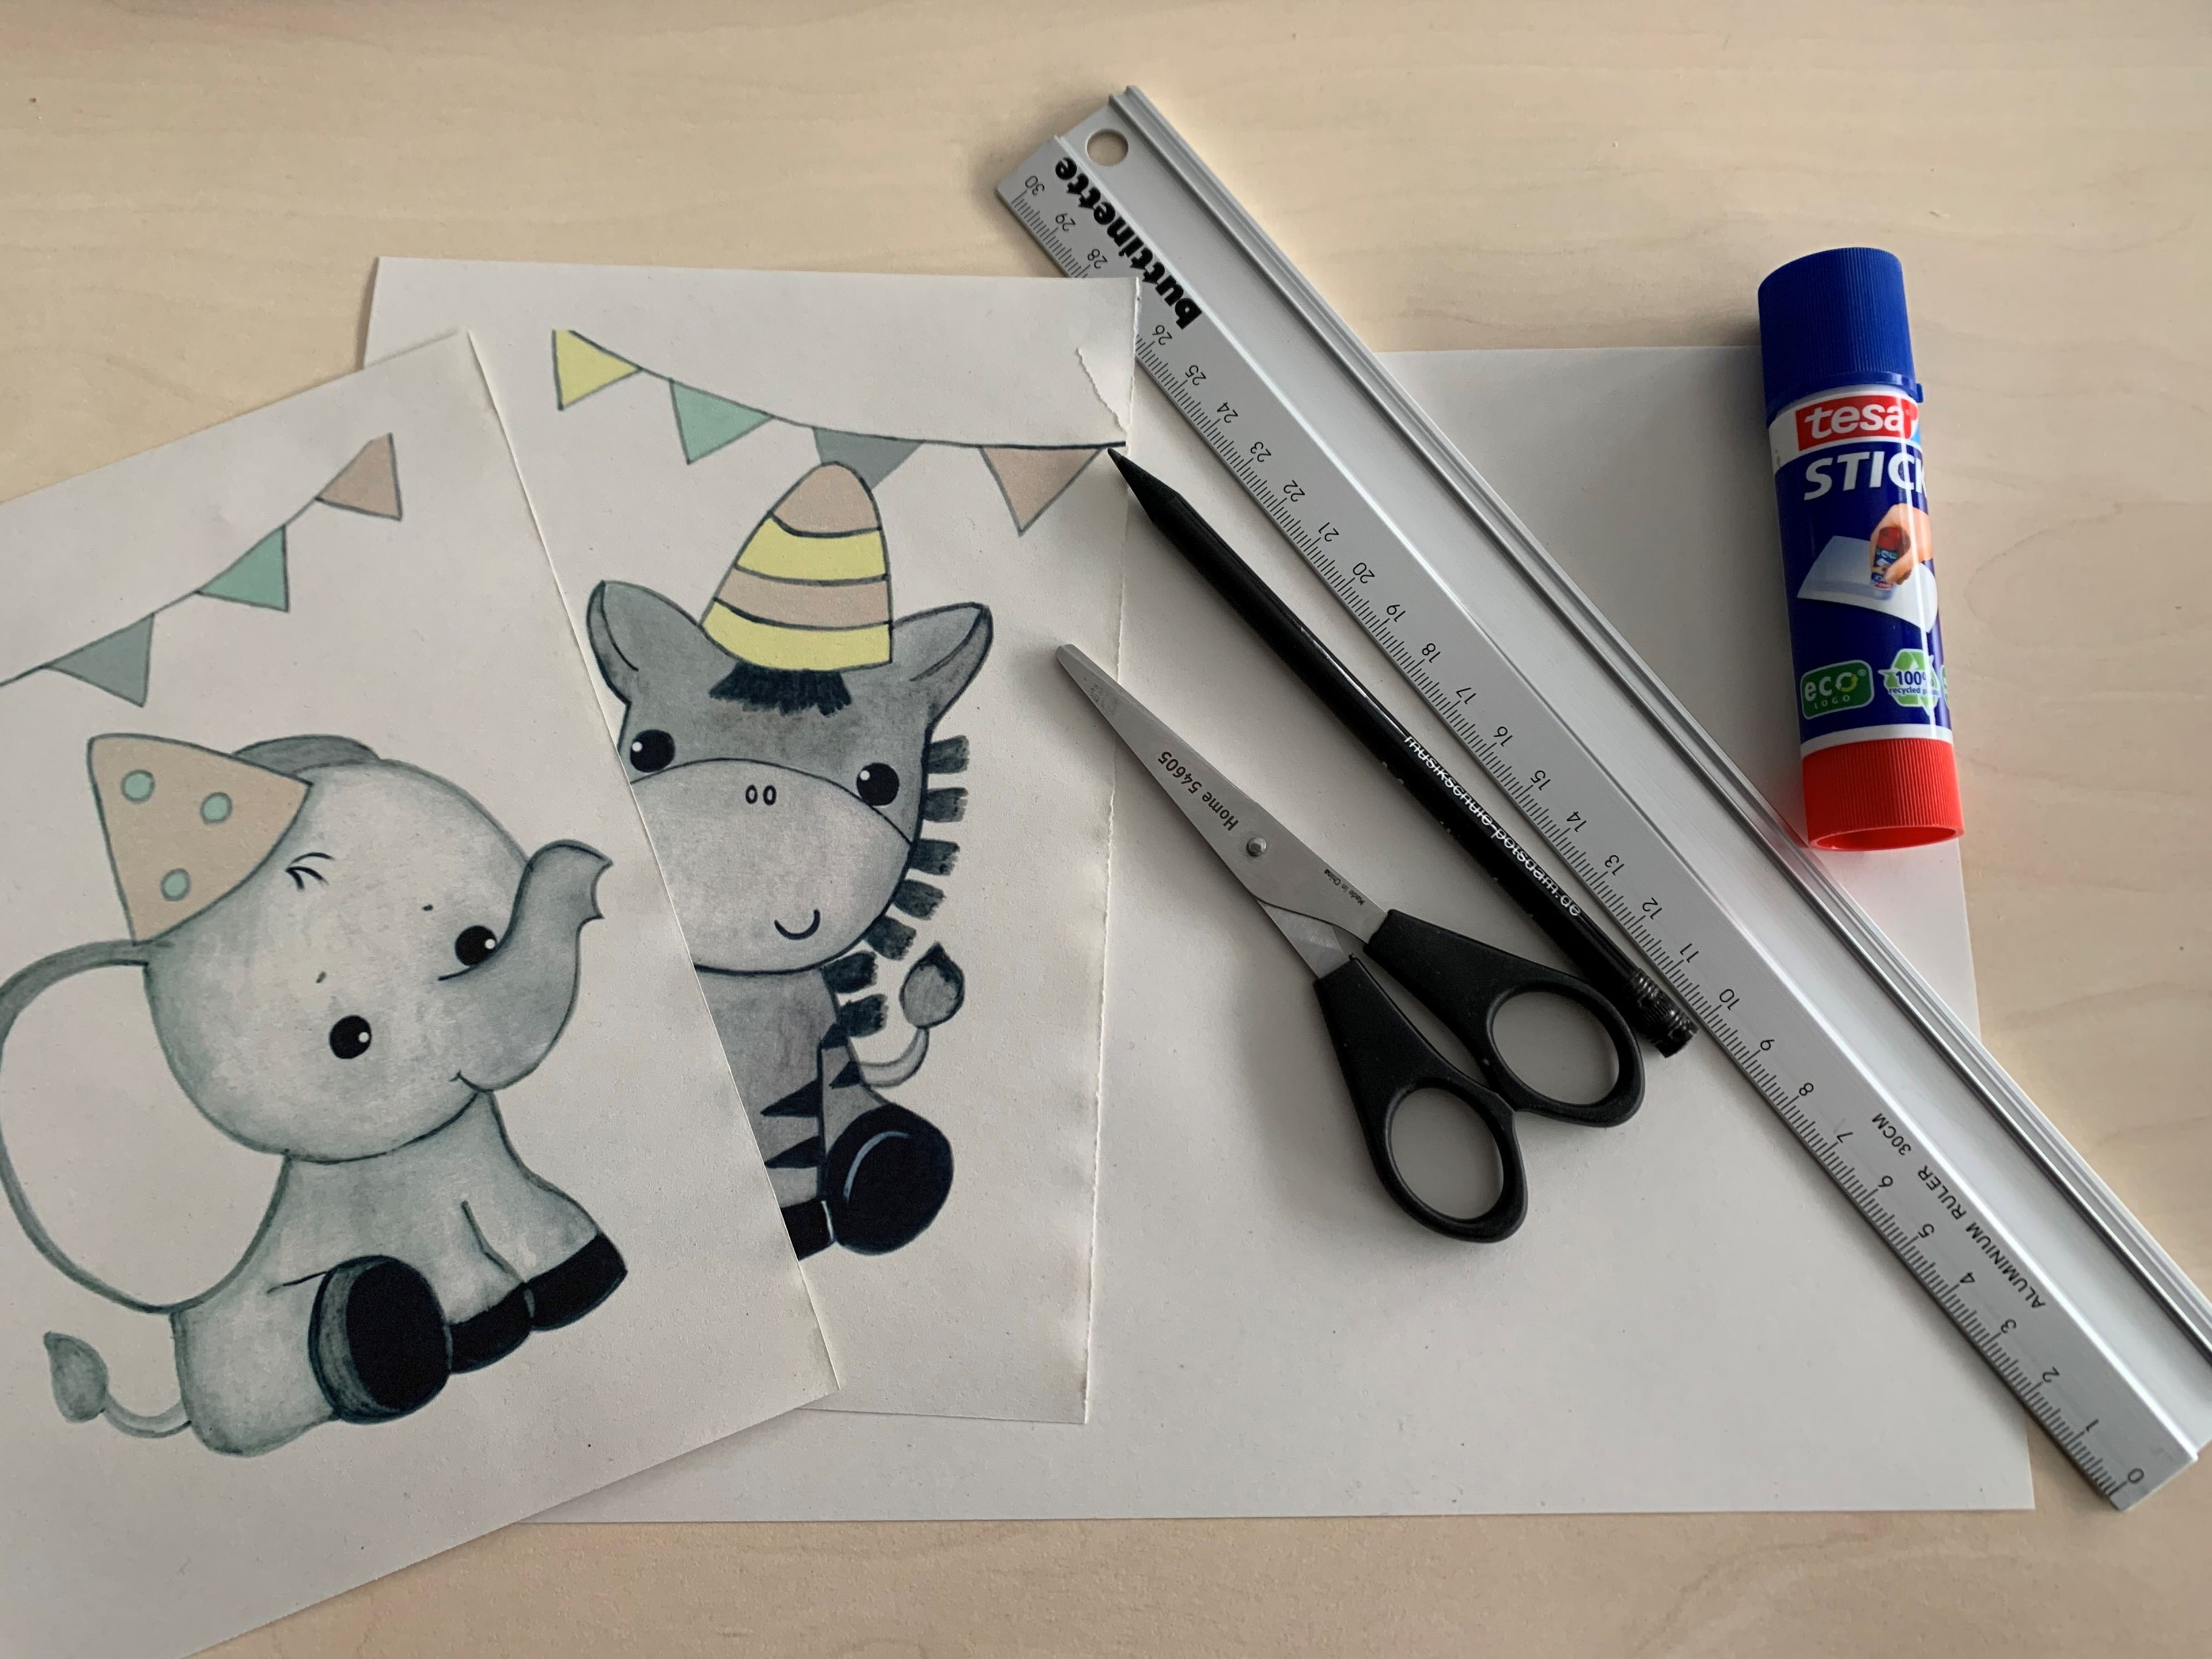 Papier mit Elefant und Zebra, dazu Schere, Stift, Lineal und ein Klebestick